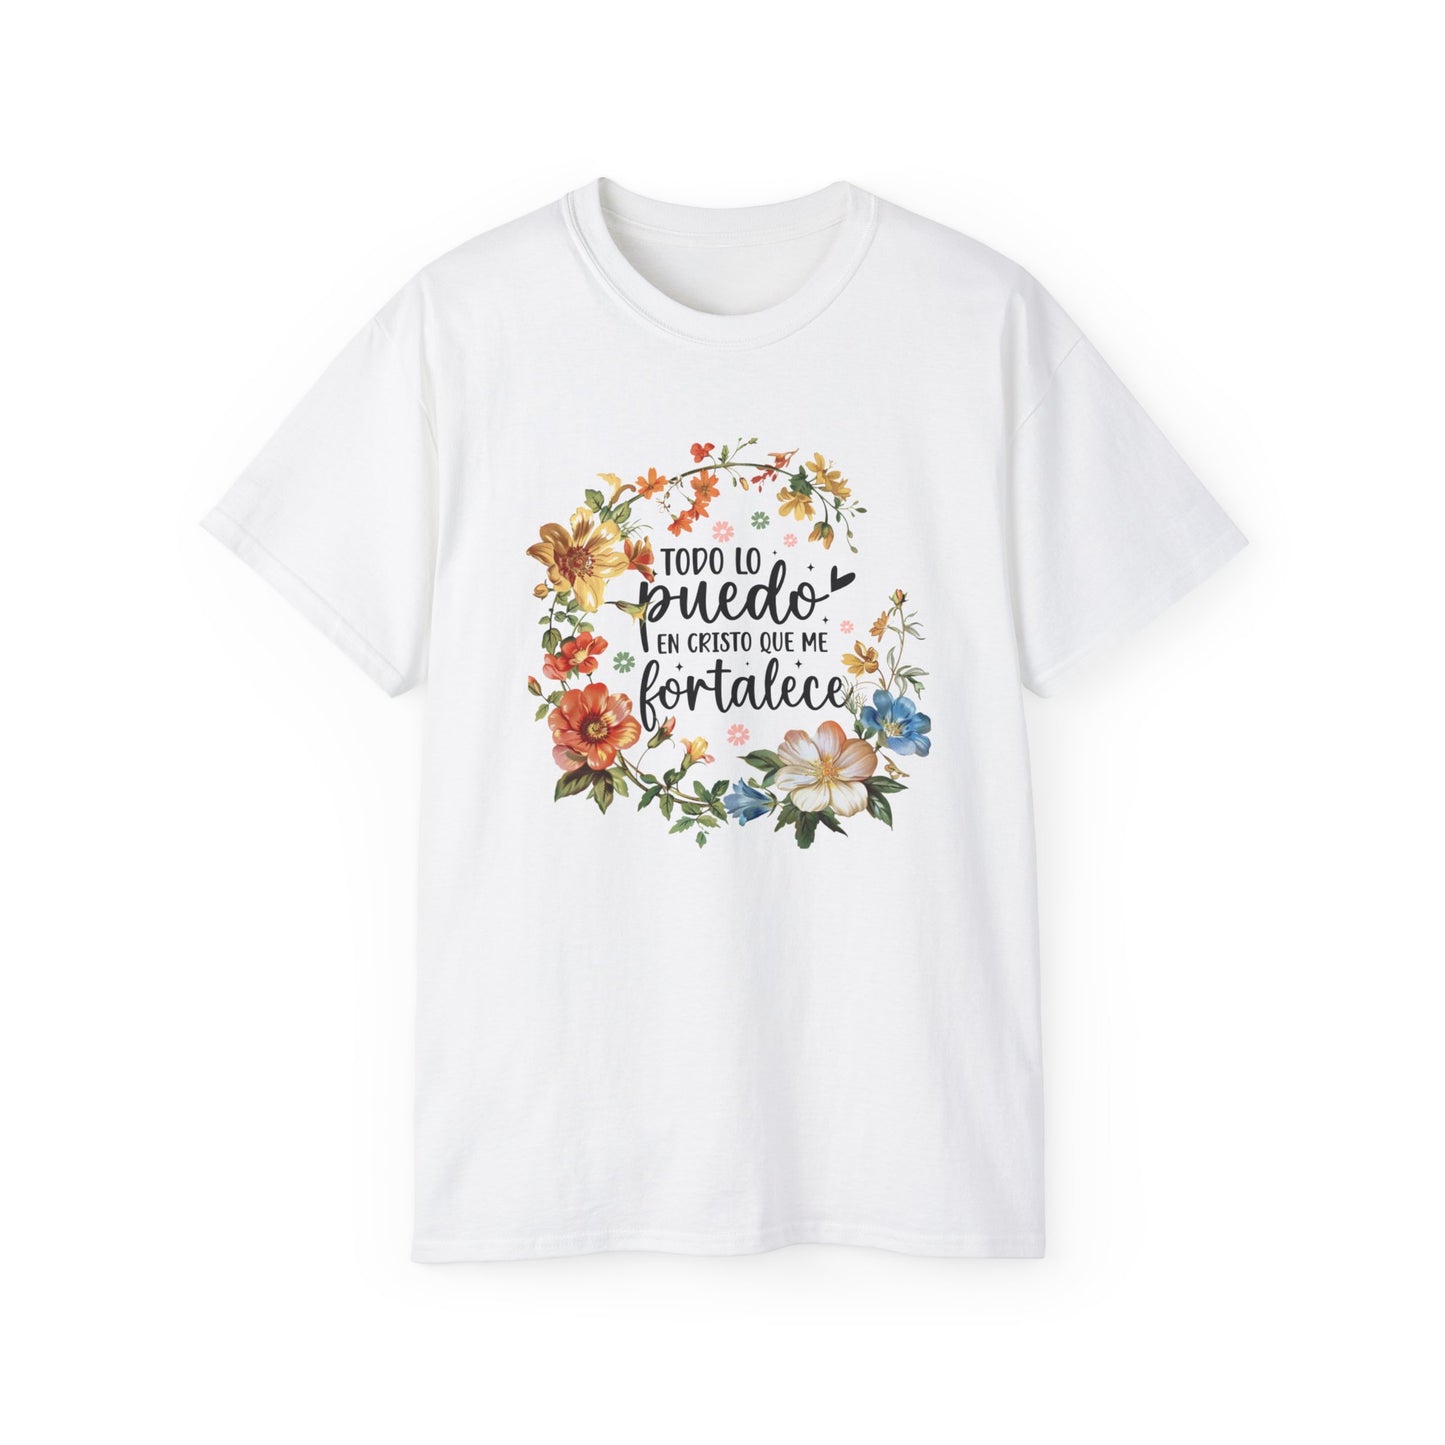 TODO LO PUEDO EN CRISTO QUE ME FORTALECE Christian Spanish Unisex T-shirt Printify